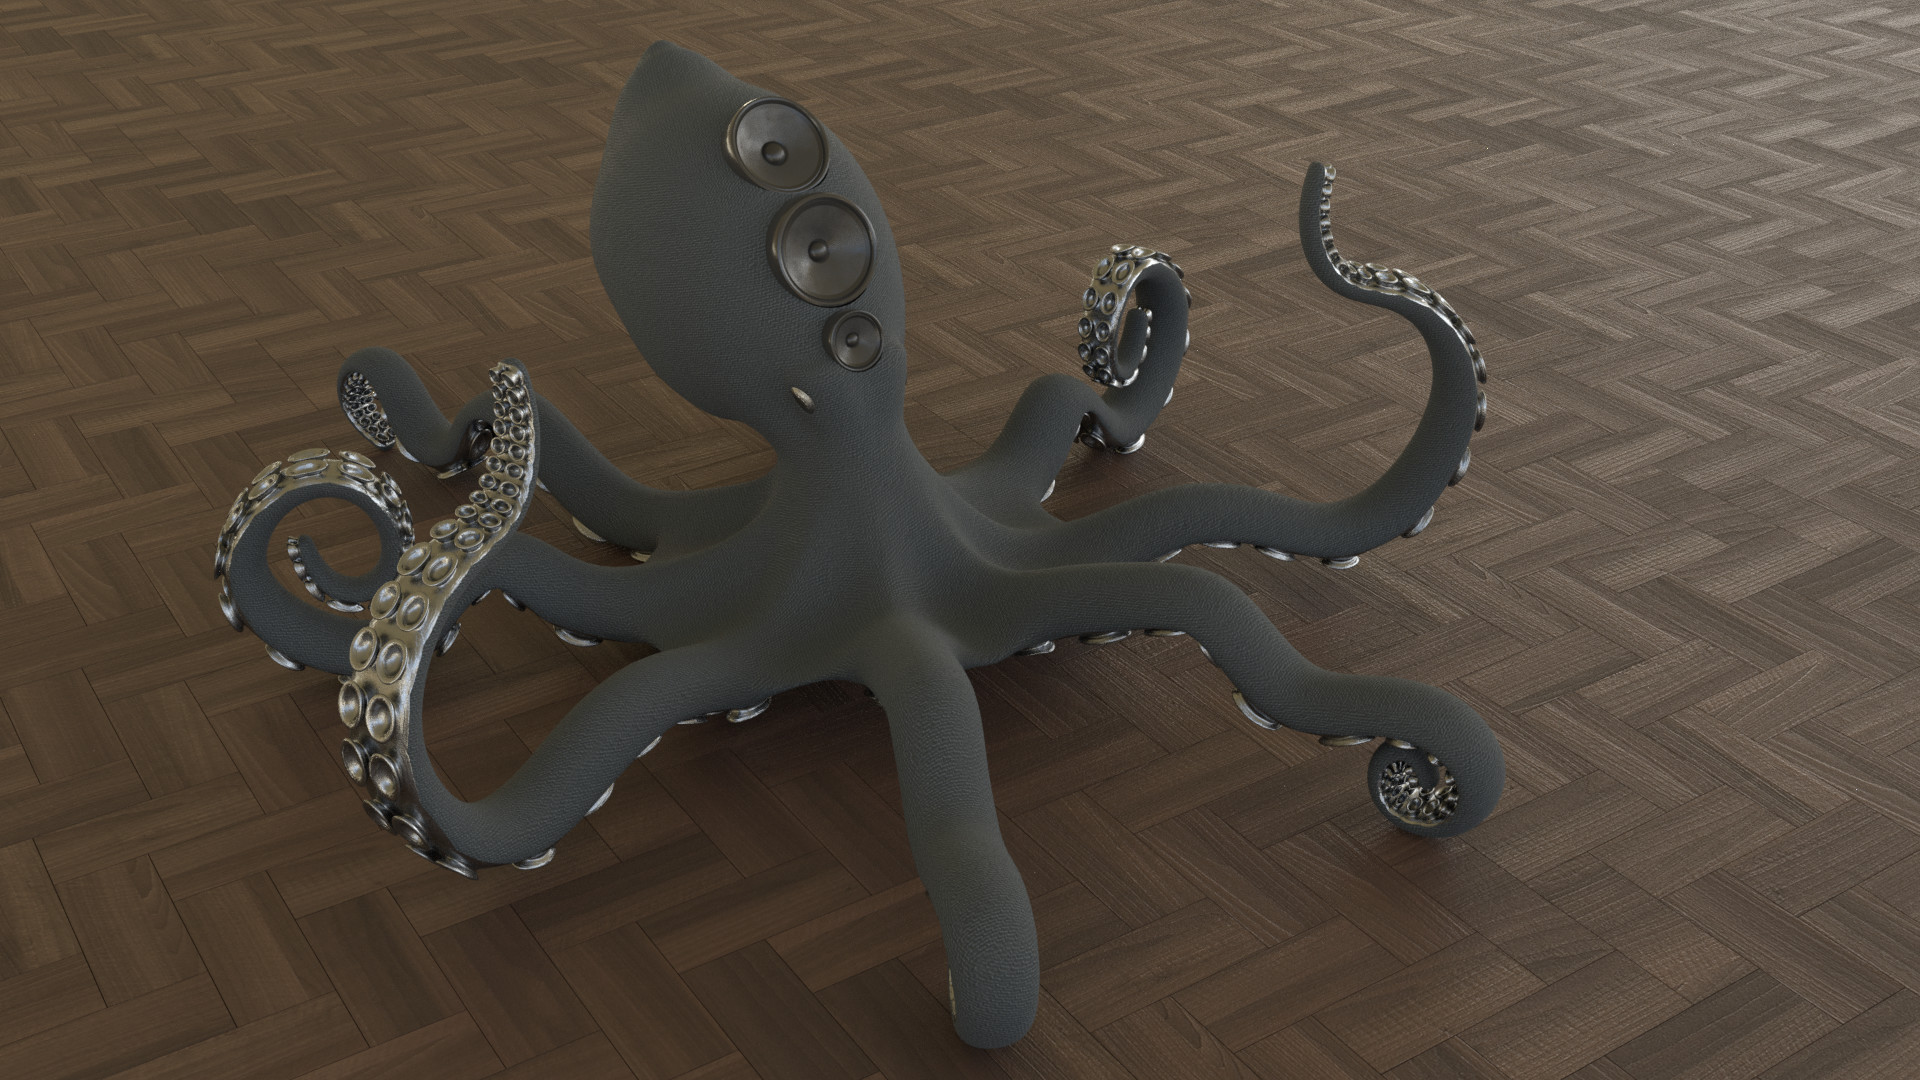 ArtStation - Octopus